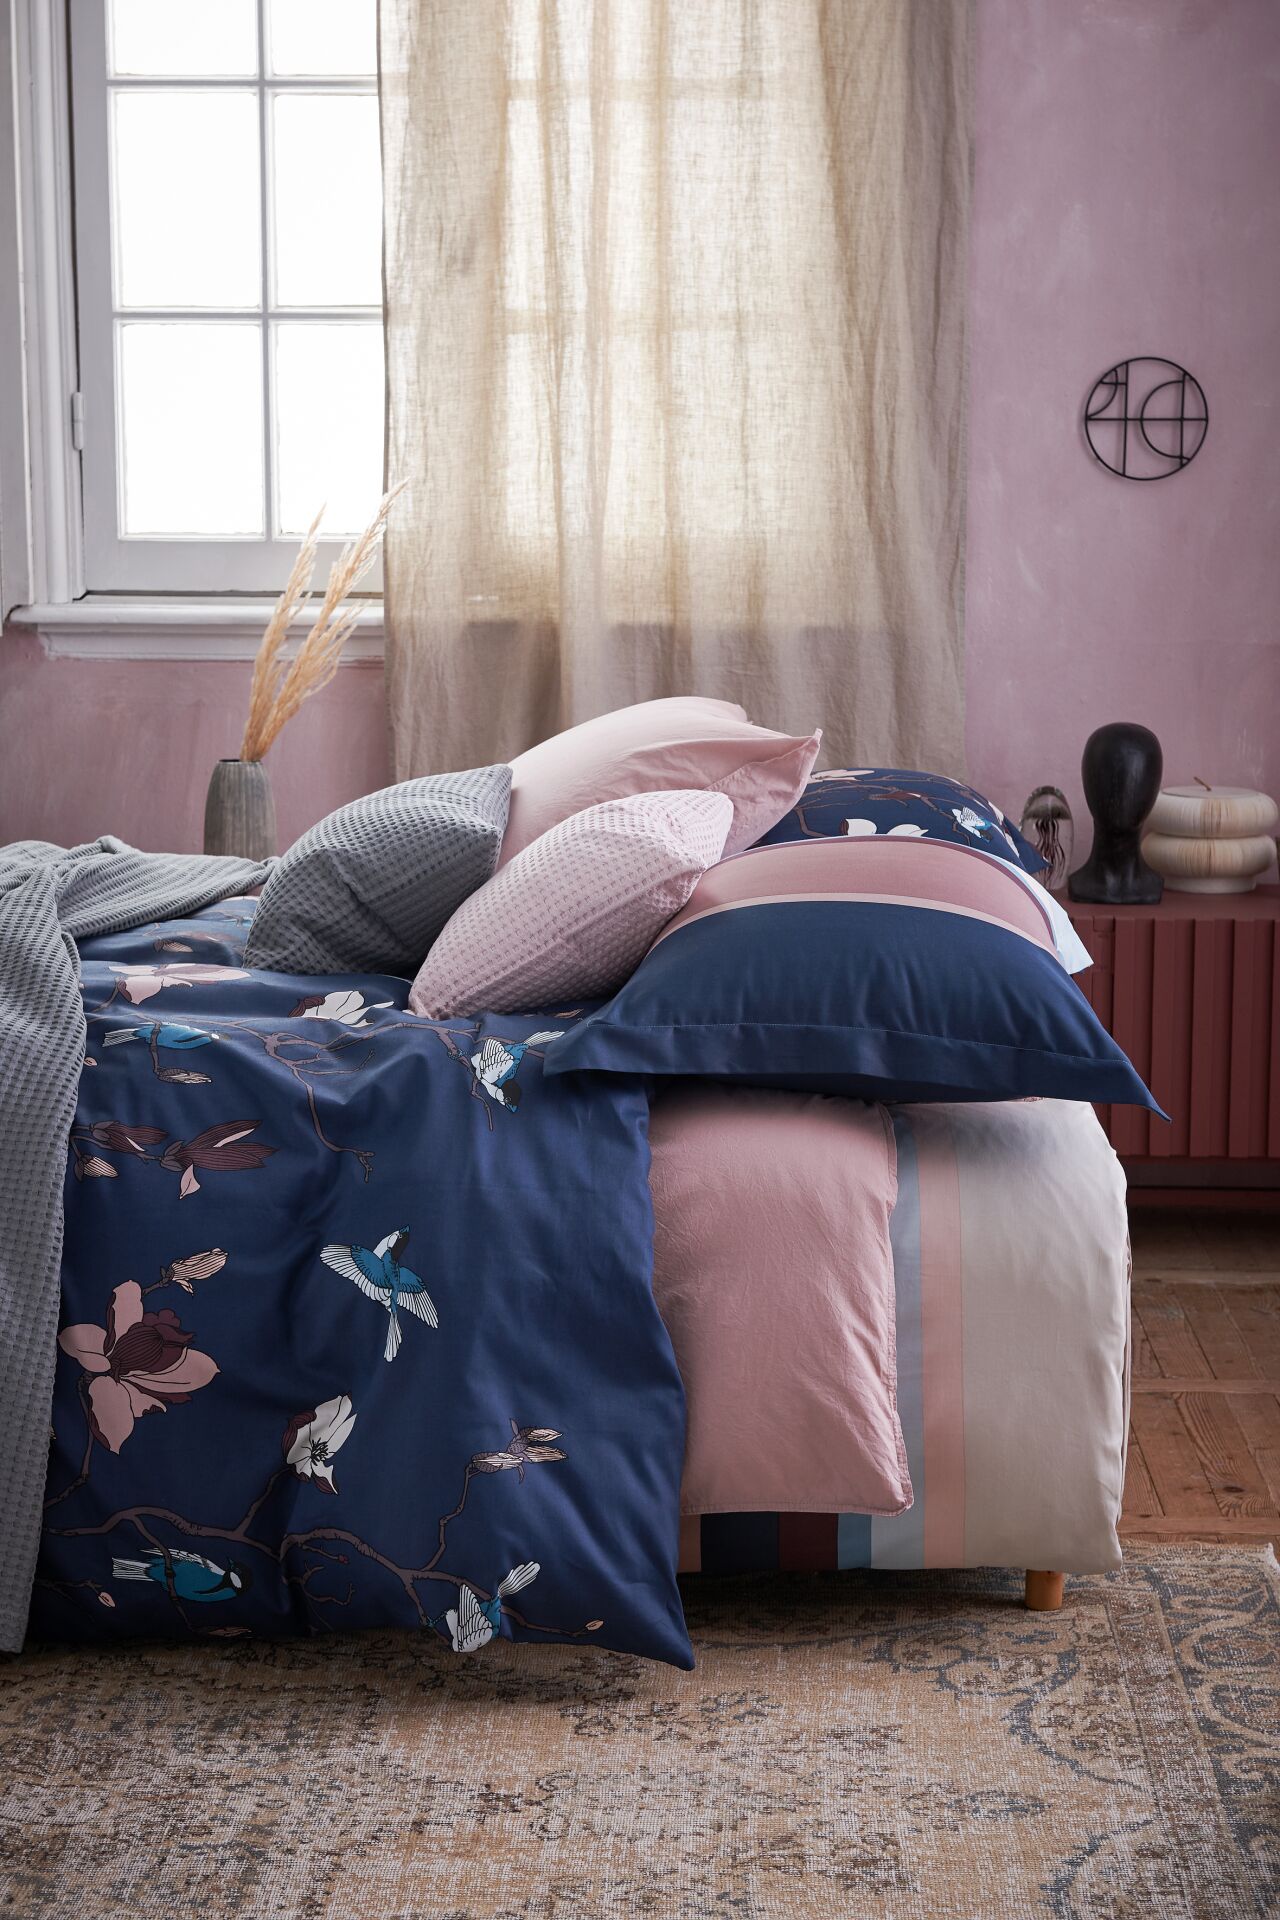 Slaapkenner voor al jouw bedden, boxsprings, matrassen en hoofdkussens bij DEMOSITE - Microsite 2.0 in Hoevelaken